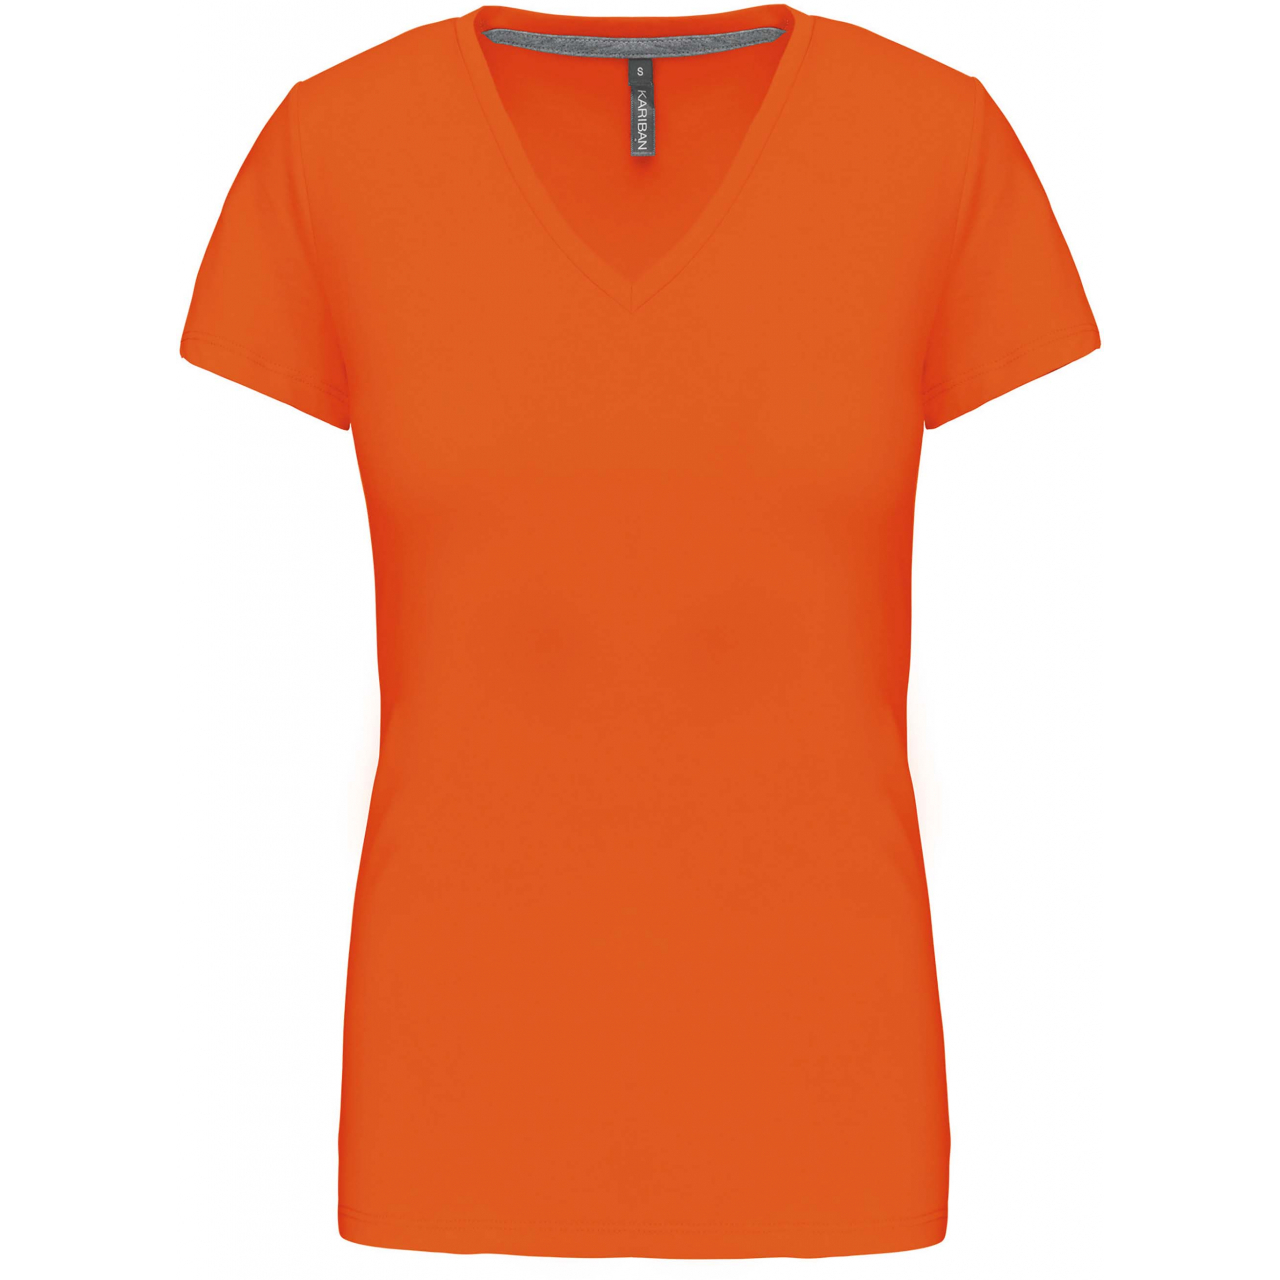 Dámské tričko Kariban V-neck s krátkým rukávem - oranžové, S